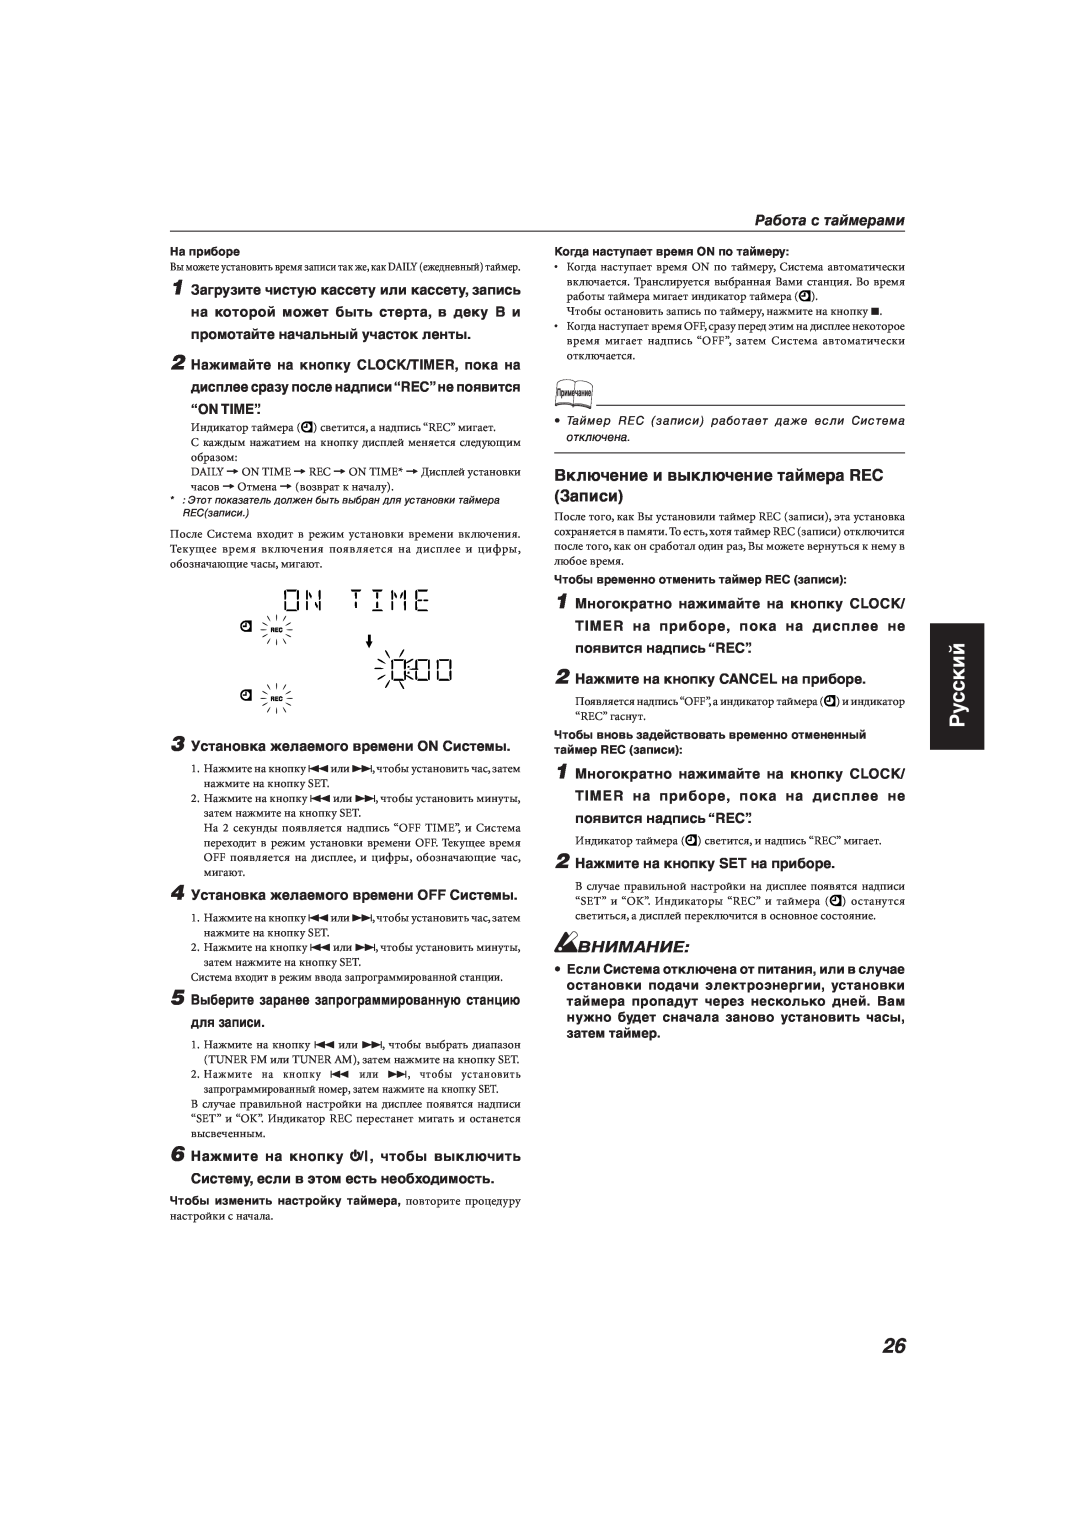 JVC MX-KA33 manual Русский, Внимание, Работа с таймерами, 3 Установка желаемого времени ON Системы, для записи 